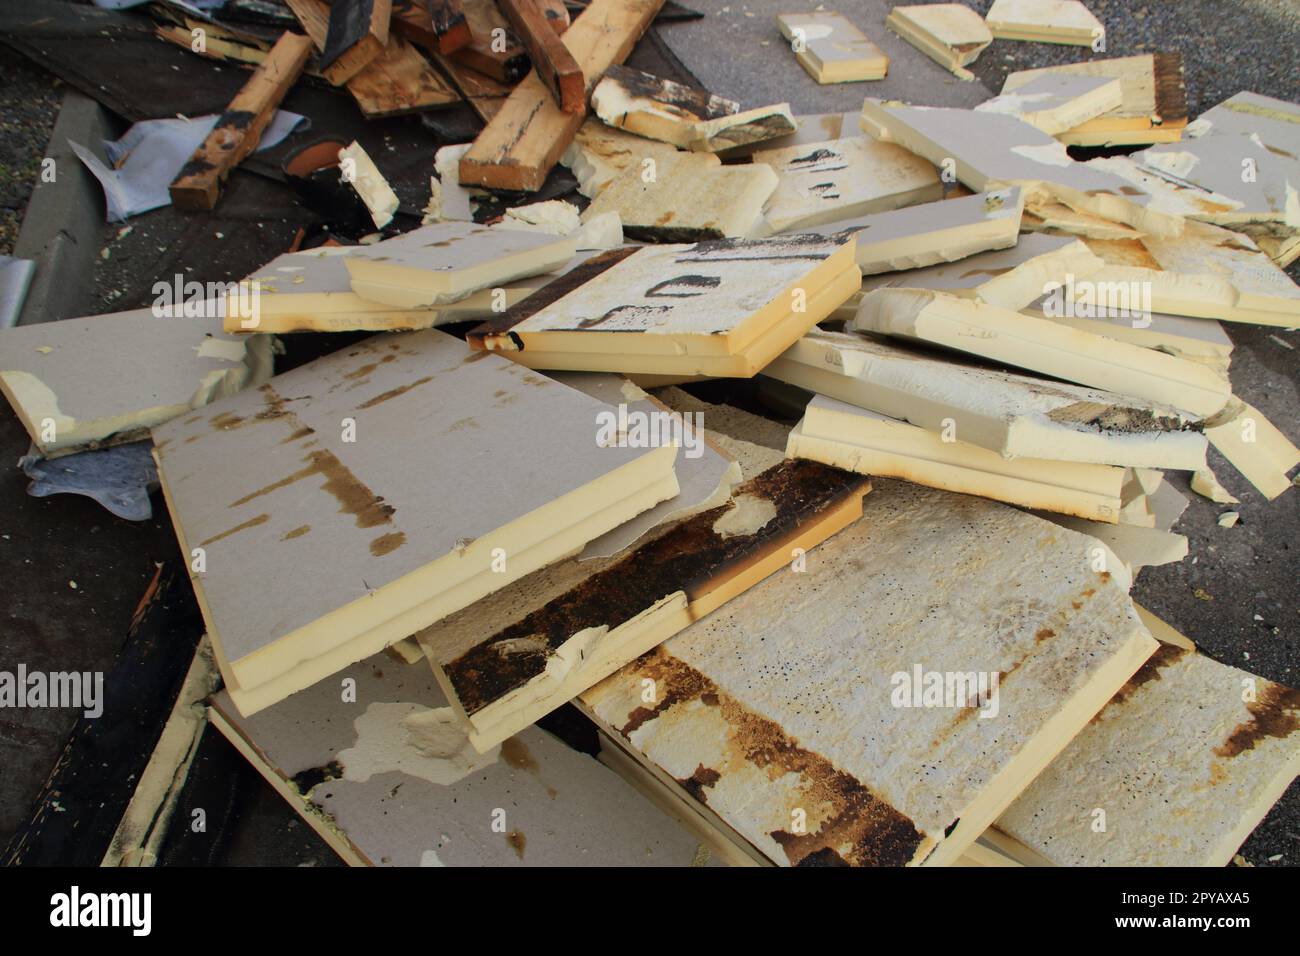 Asbest Isolierung von der Decke auf einem leeren Bauernhaus peeling  Stockfotografie - Alamy